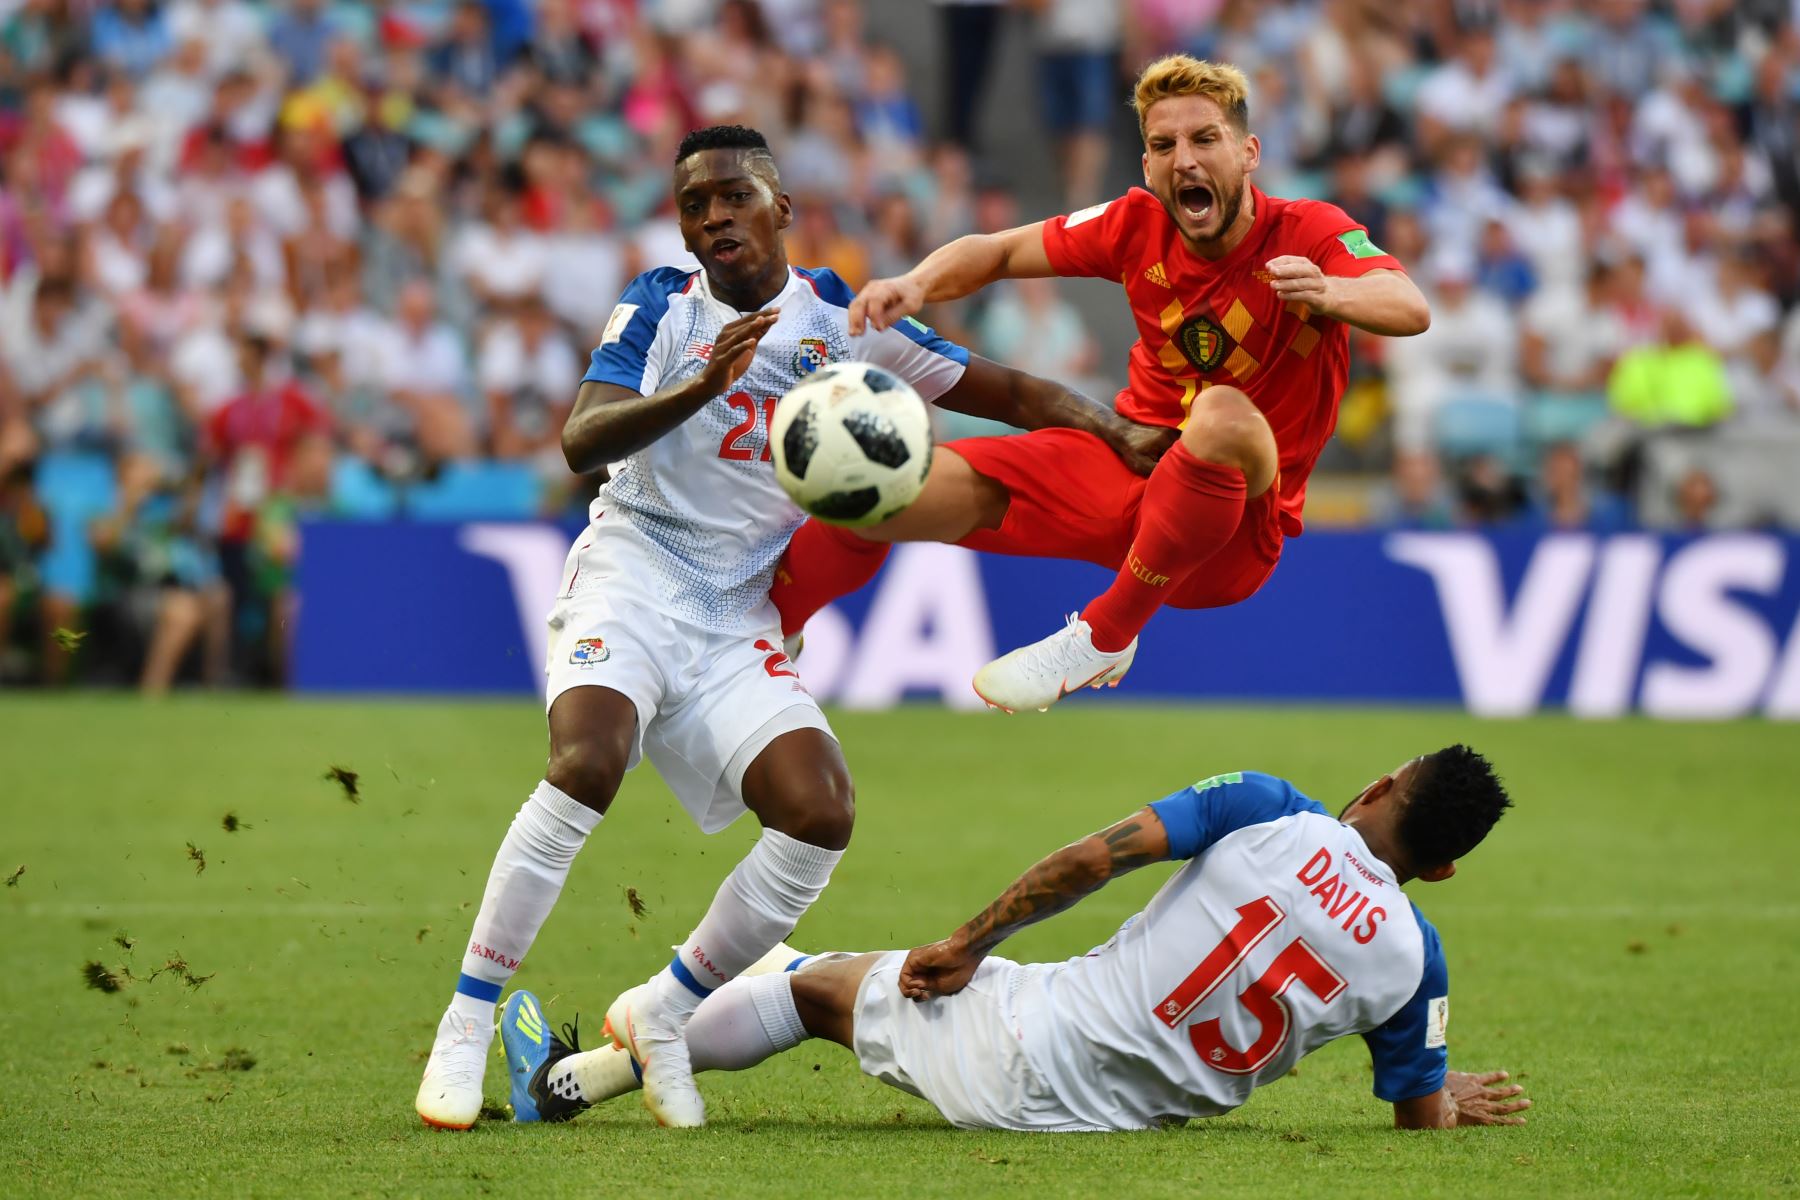 El alero de Bélgica Dries Mertens (C) reacciona mientras compite por el balón con el centrocampista José Luis Rodríguez (L) y el defensor panameño Erick Davis (R) durante el partido de fútbol del Grupo G de la Copa Mundial Rusia 2018 entre Bélgica y Panamá. AFP